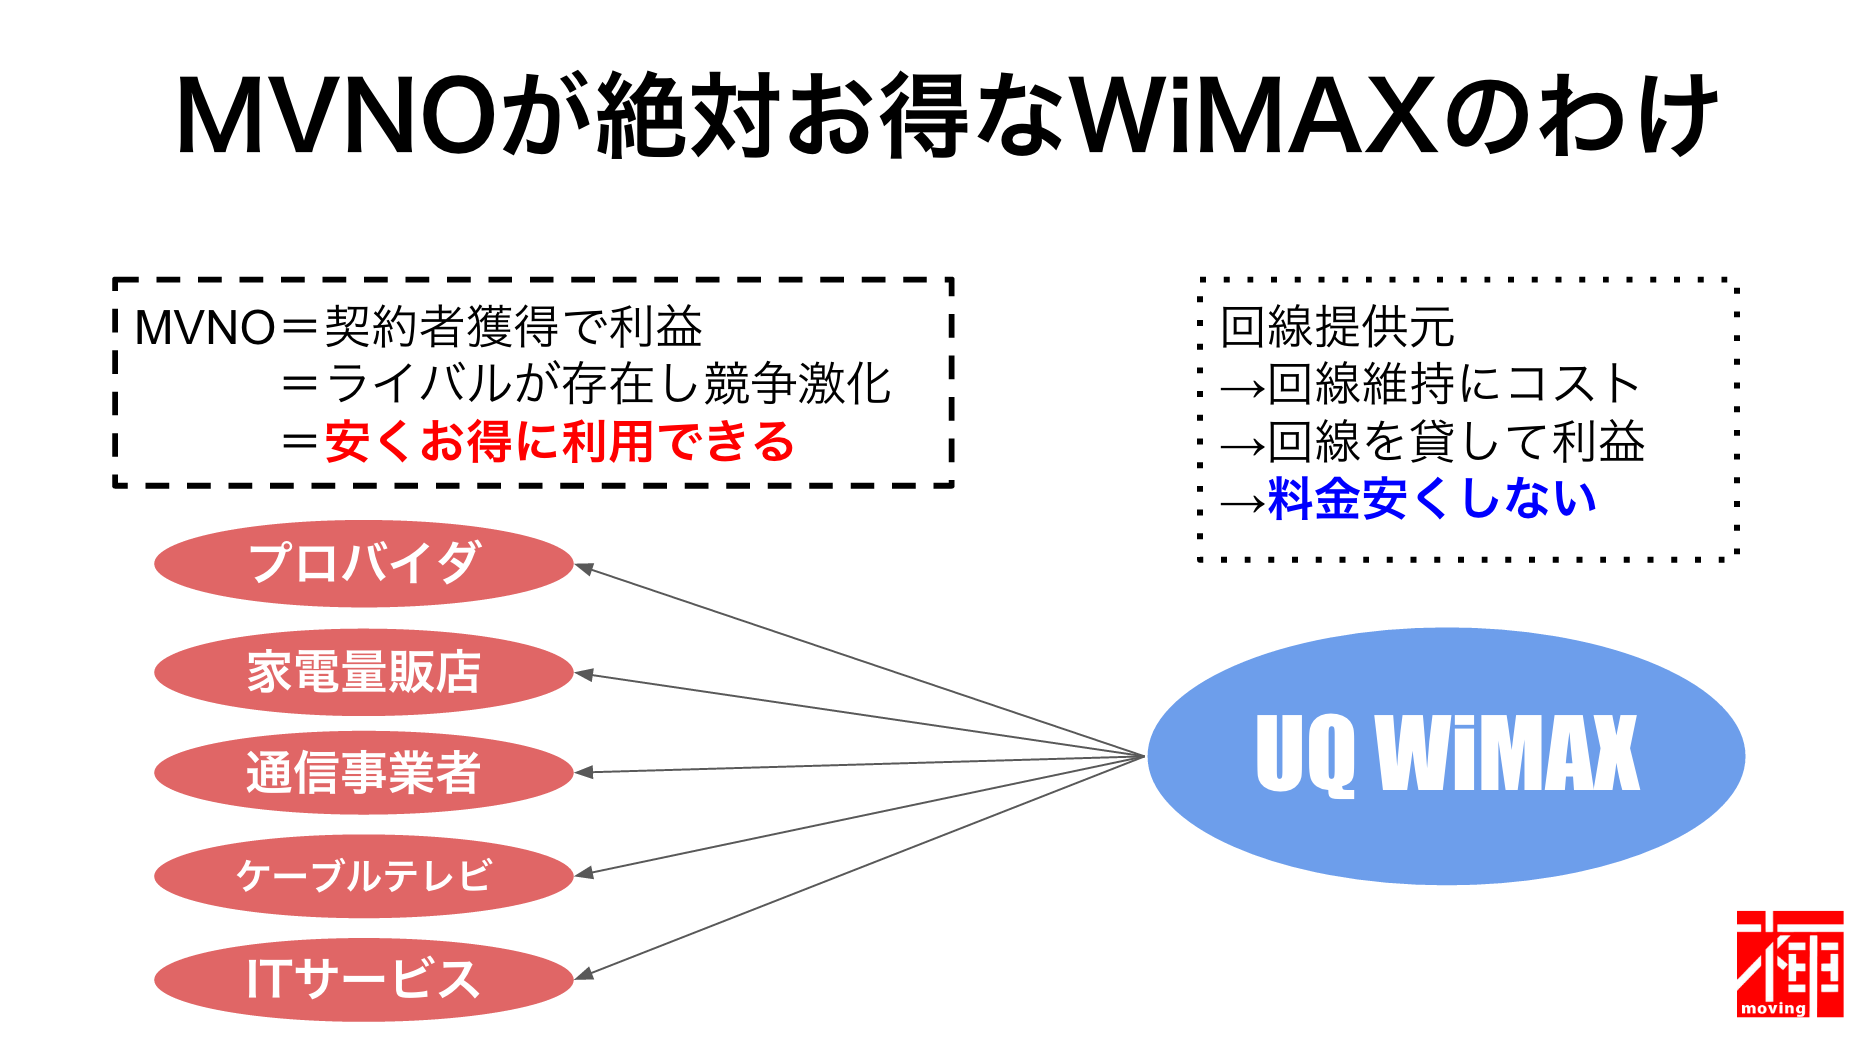 WiMAXキャンペーン比較